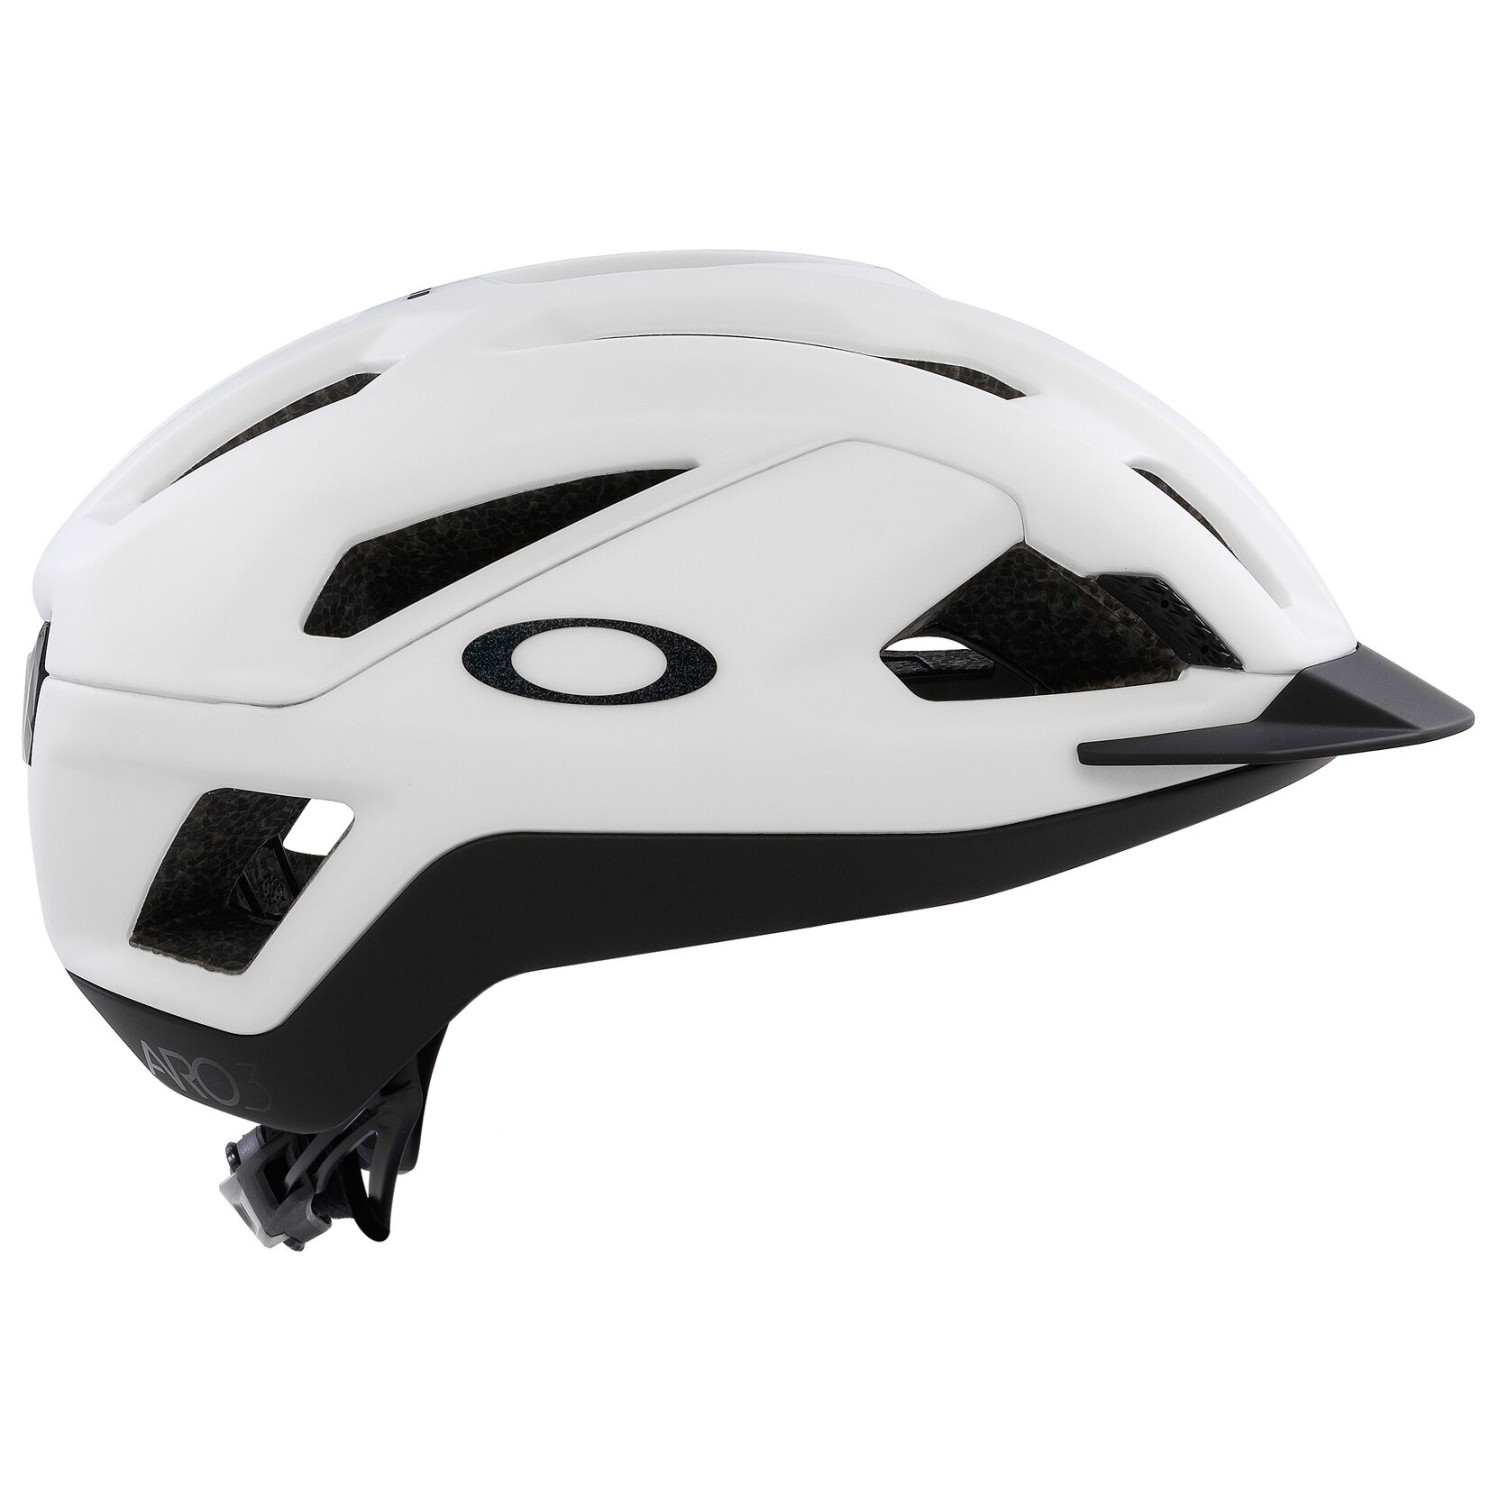 Велосипедный шлем Oakley ARO3 Allroad, матовый белый